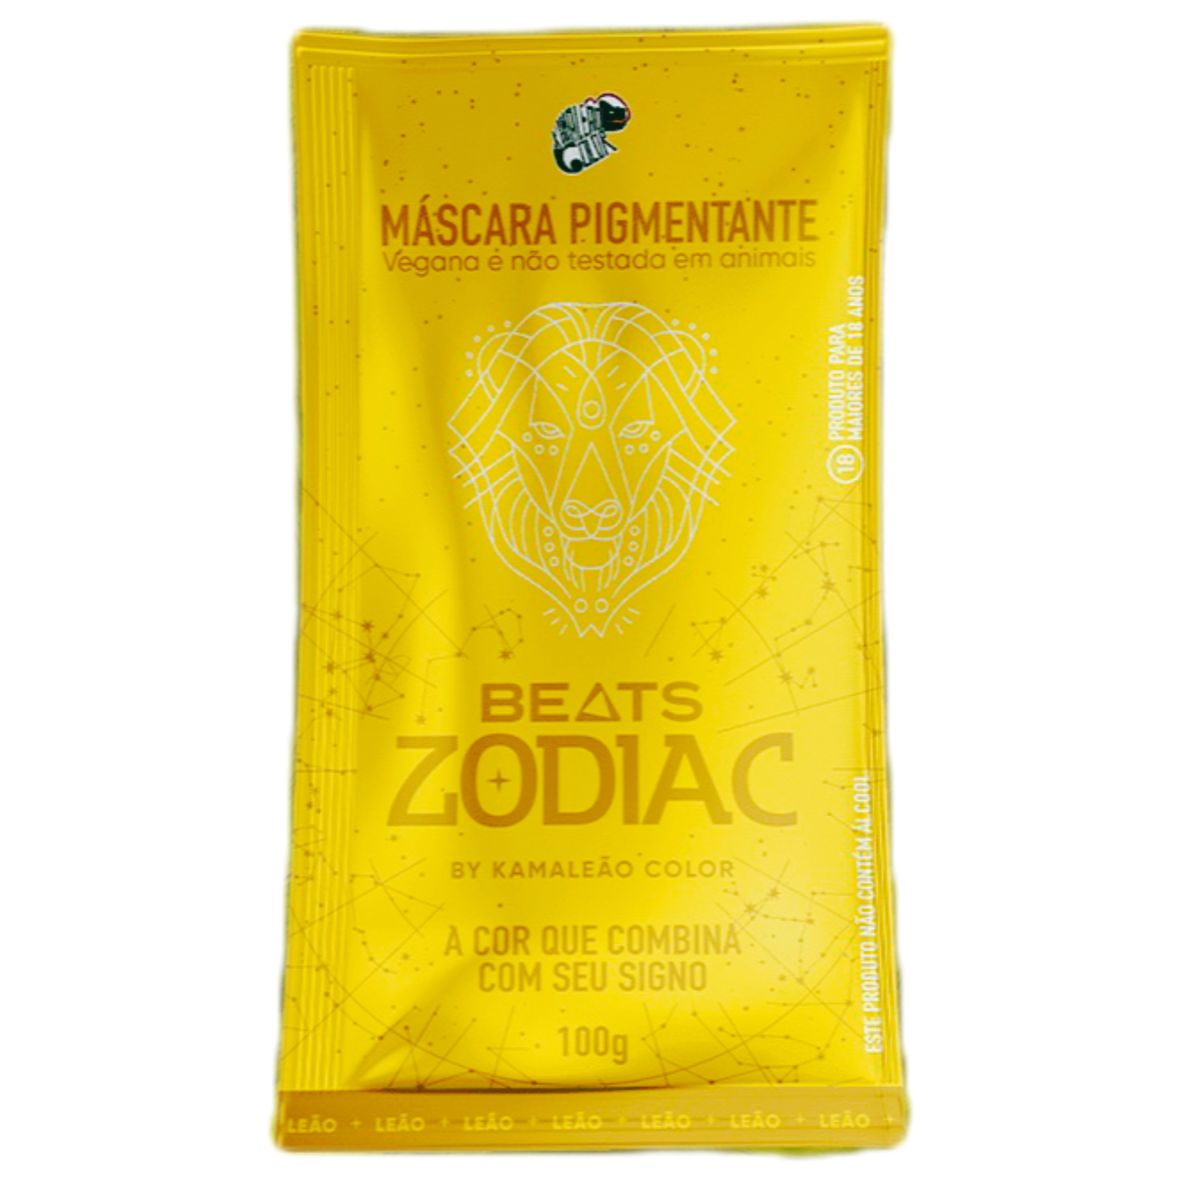 Kamaleão Color Máscara Pigmentante Beats Zodiac Leão - Amarelo - 100g